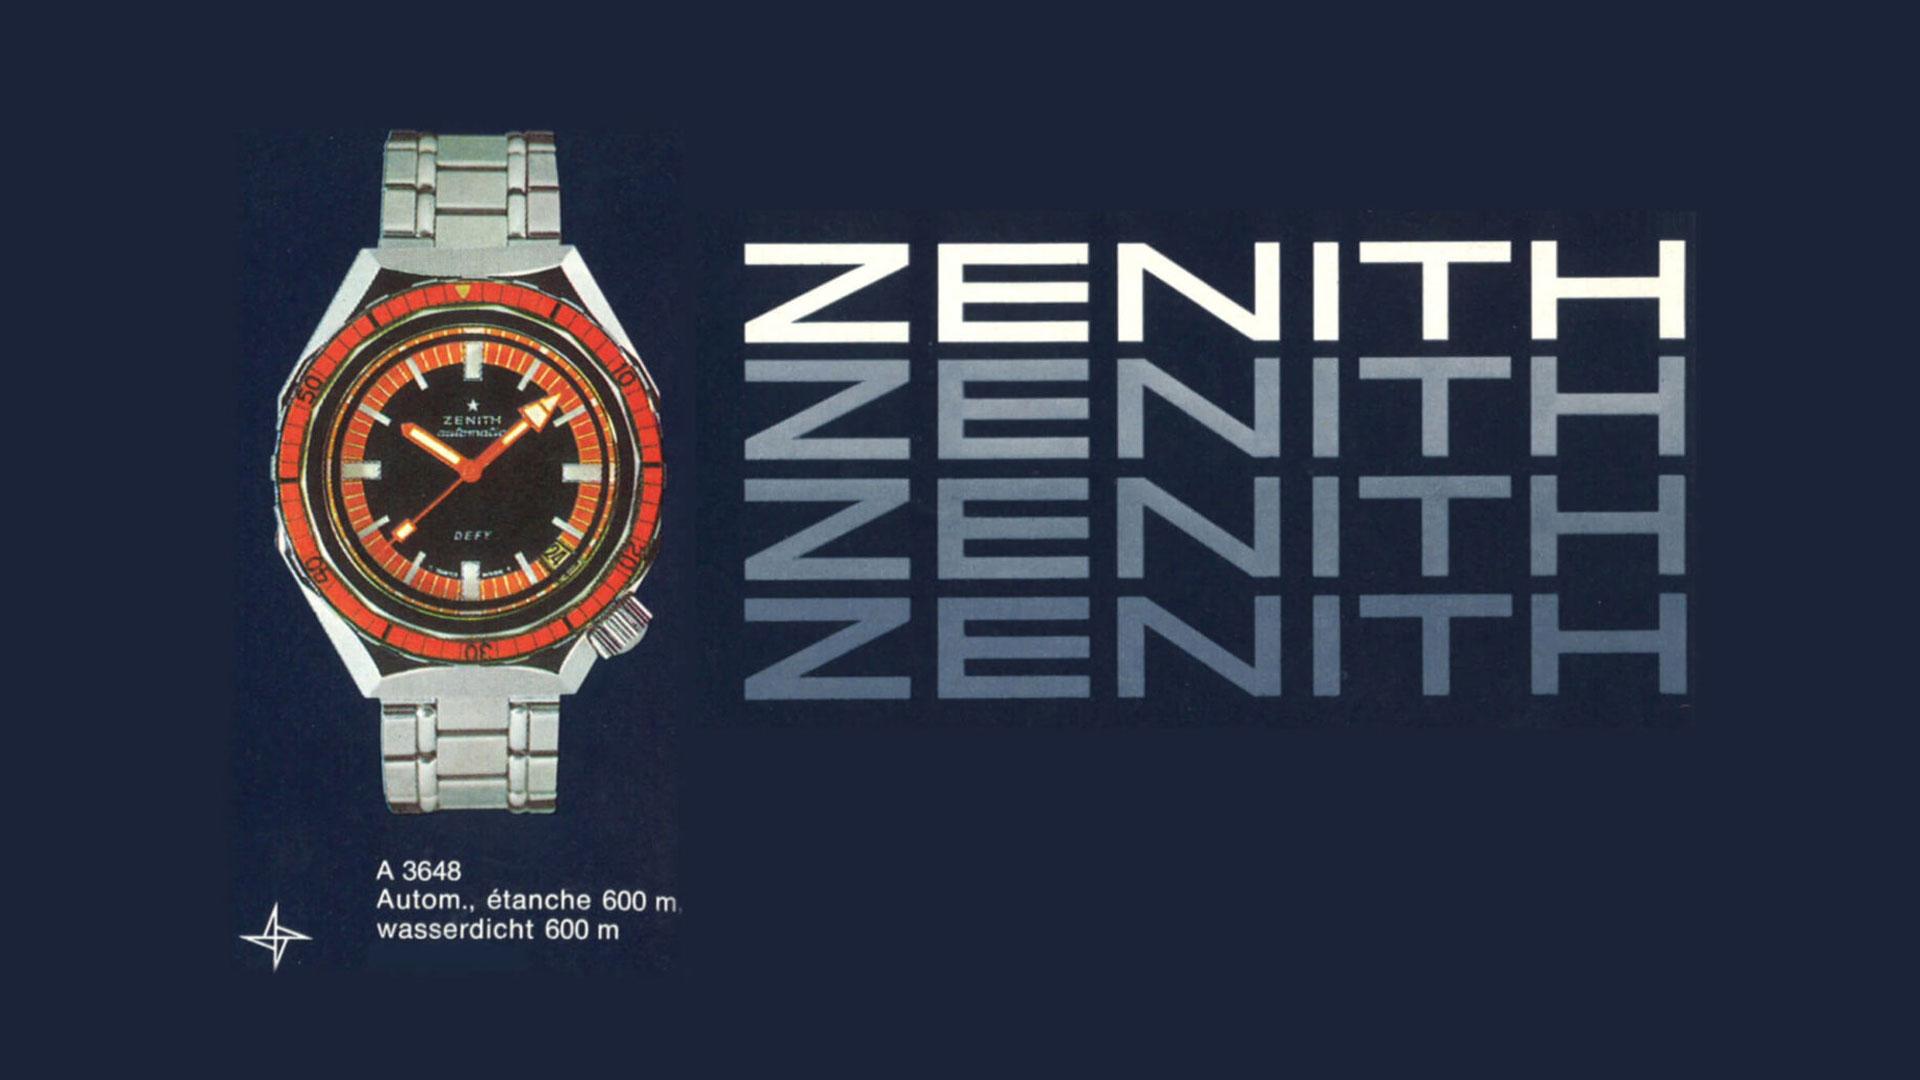 Zenith Defy A3648 original from 1969